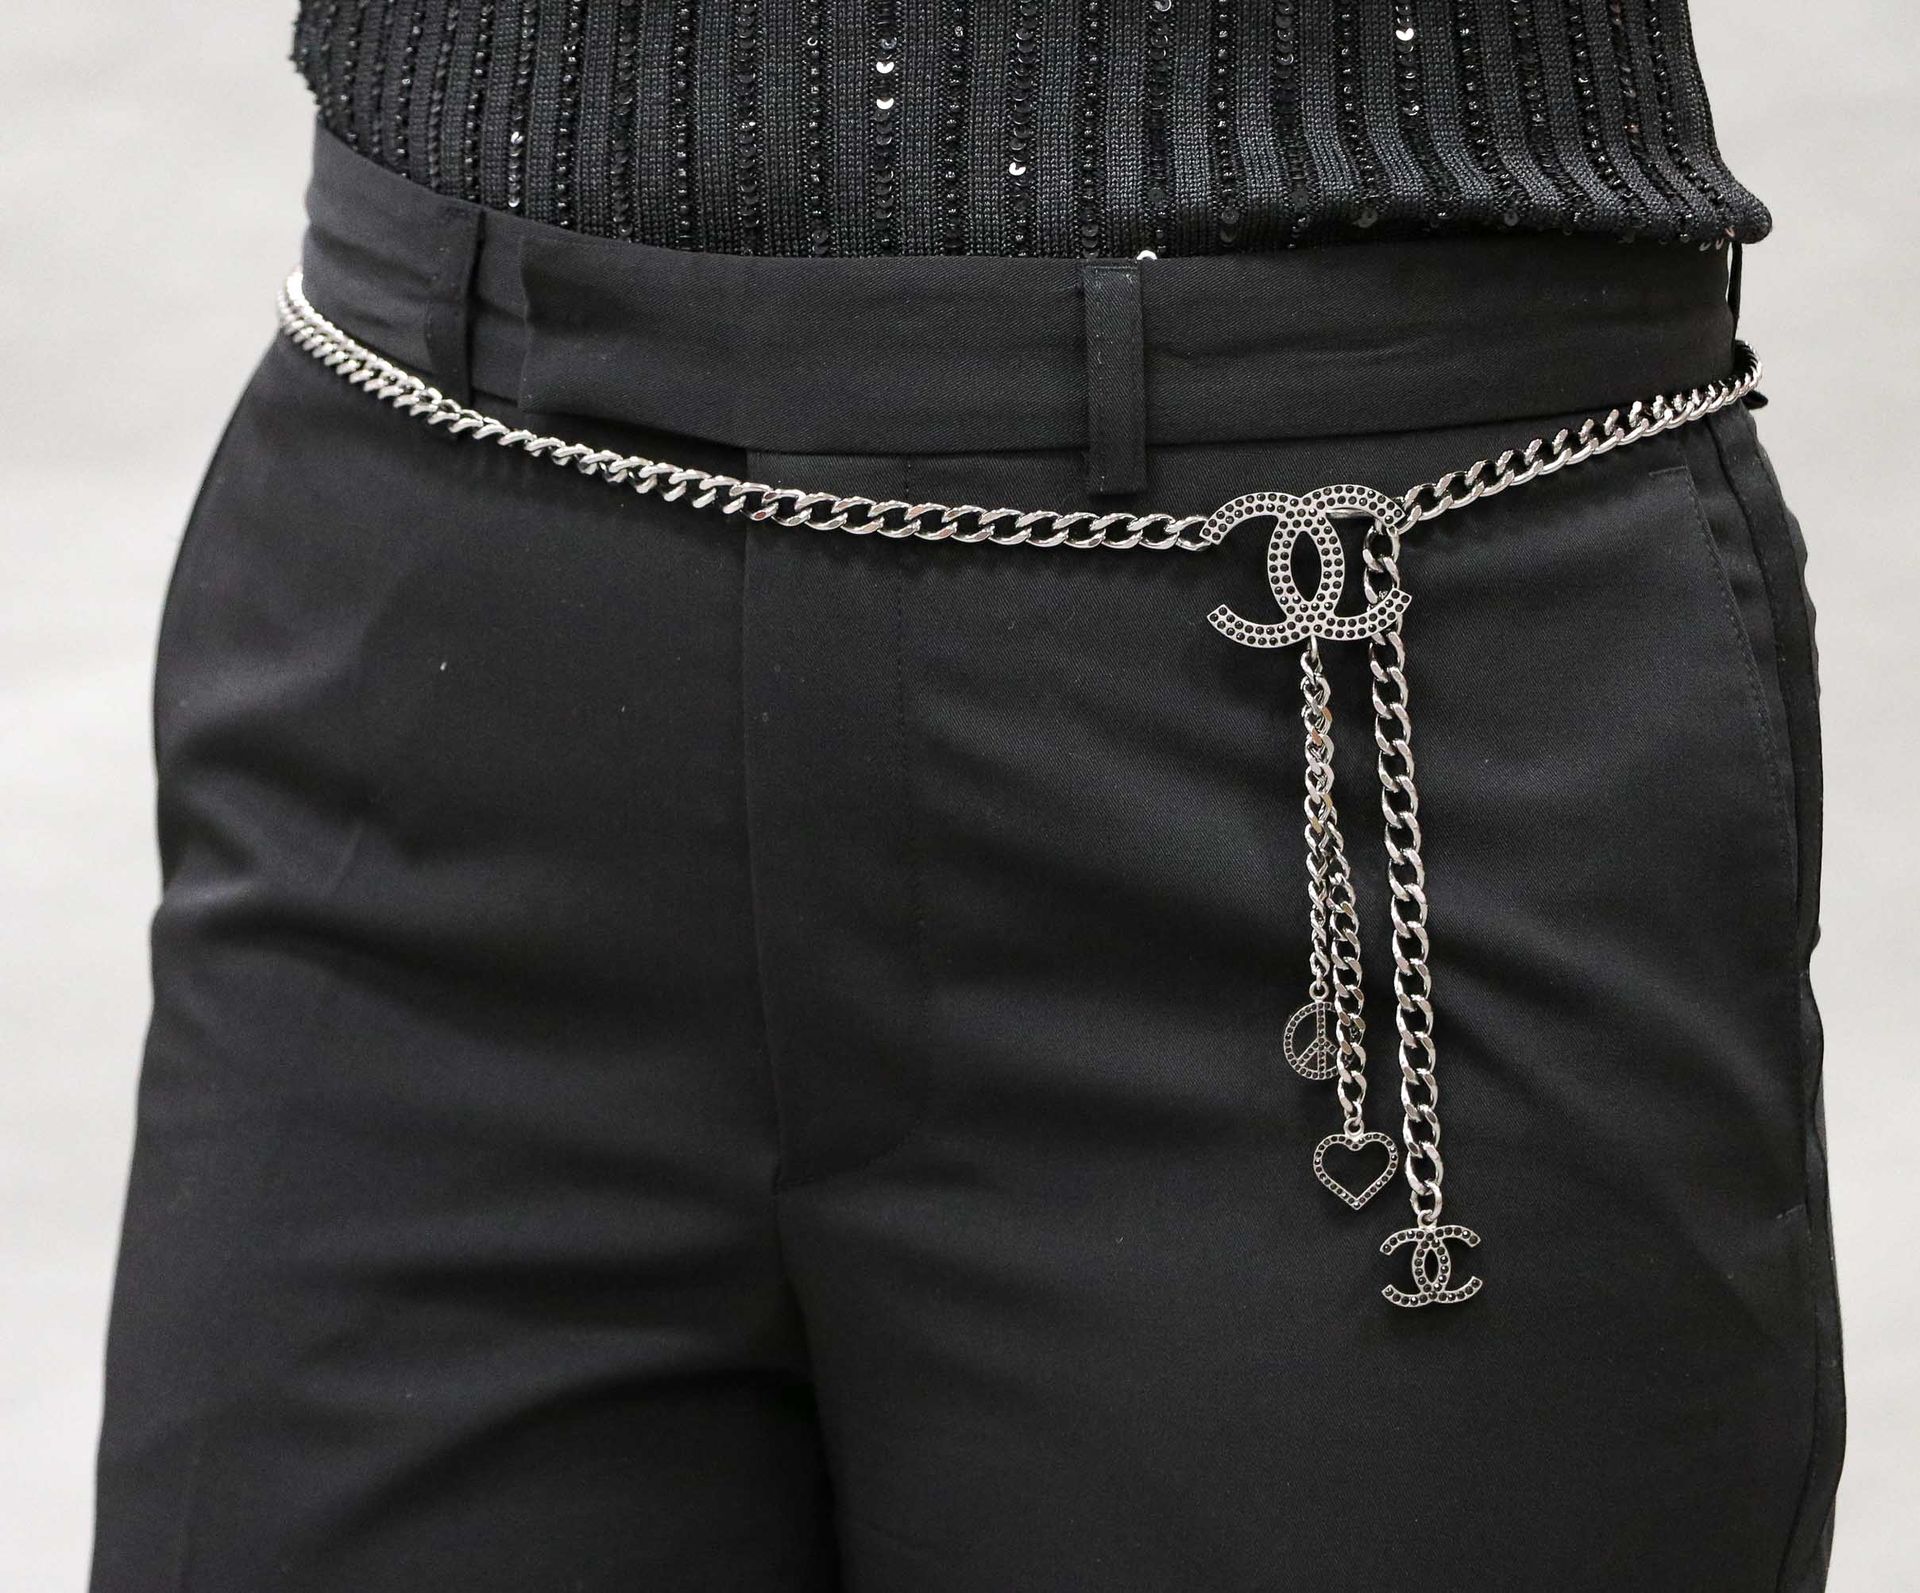 Null 香奈儿 - 约2008年 - 镀银金属和黑色水钻装饰的皮带或项链，上面有香奈儿首字母、和平之爱和心形图案 - 长：98厘米